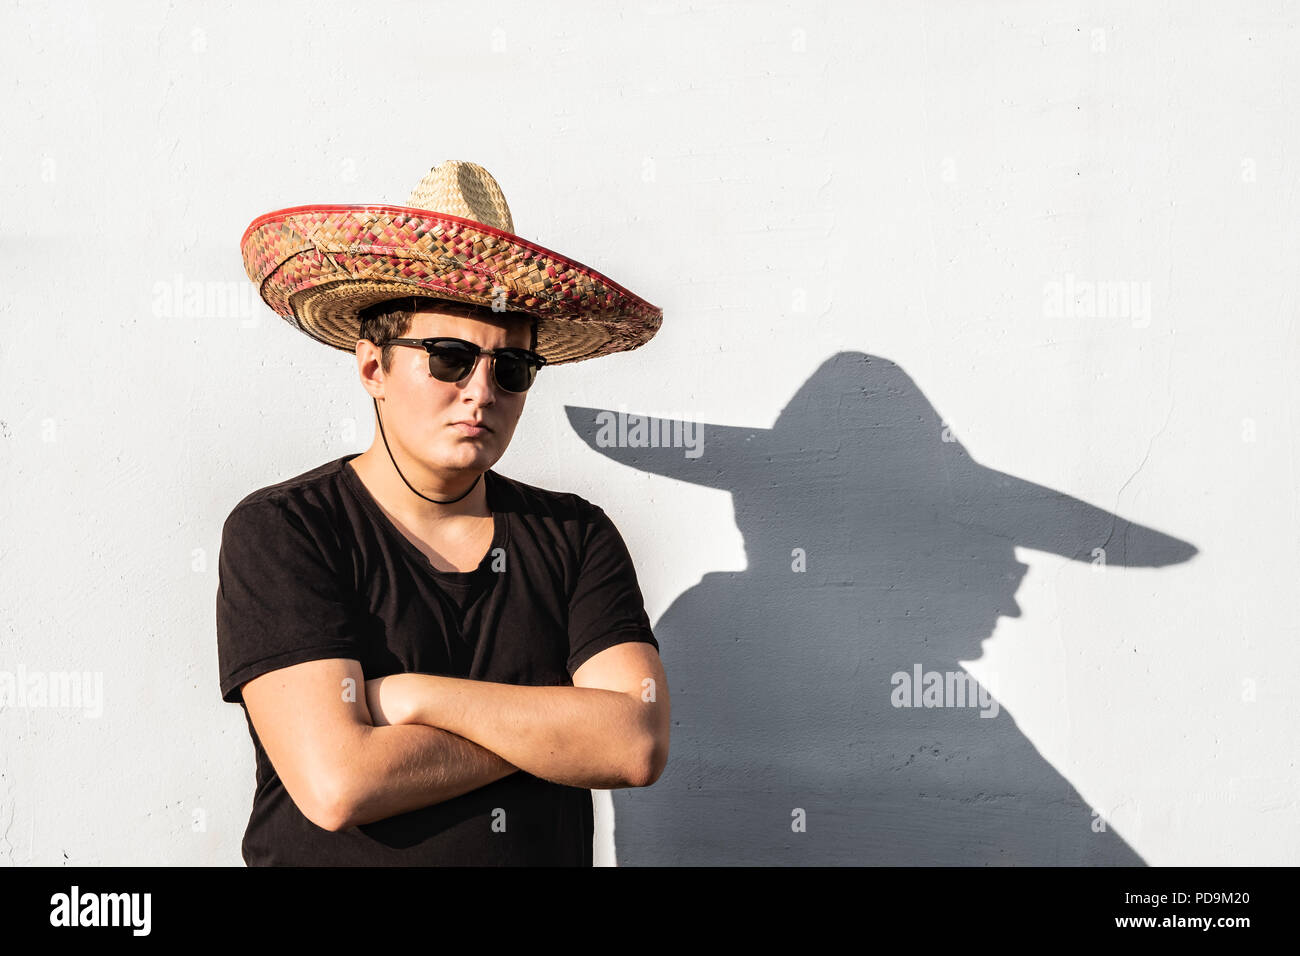 Junge männliche Person im Sombrero. Mexiko Unabhängigkeit festliche Konzept der Mann mit nationalen Mexican Hat Stockfoto